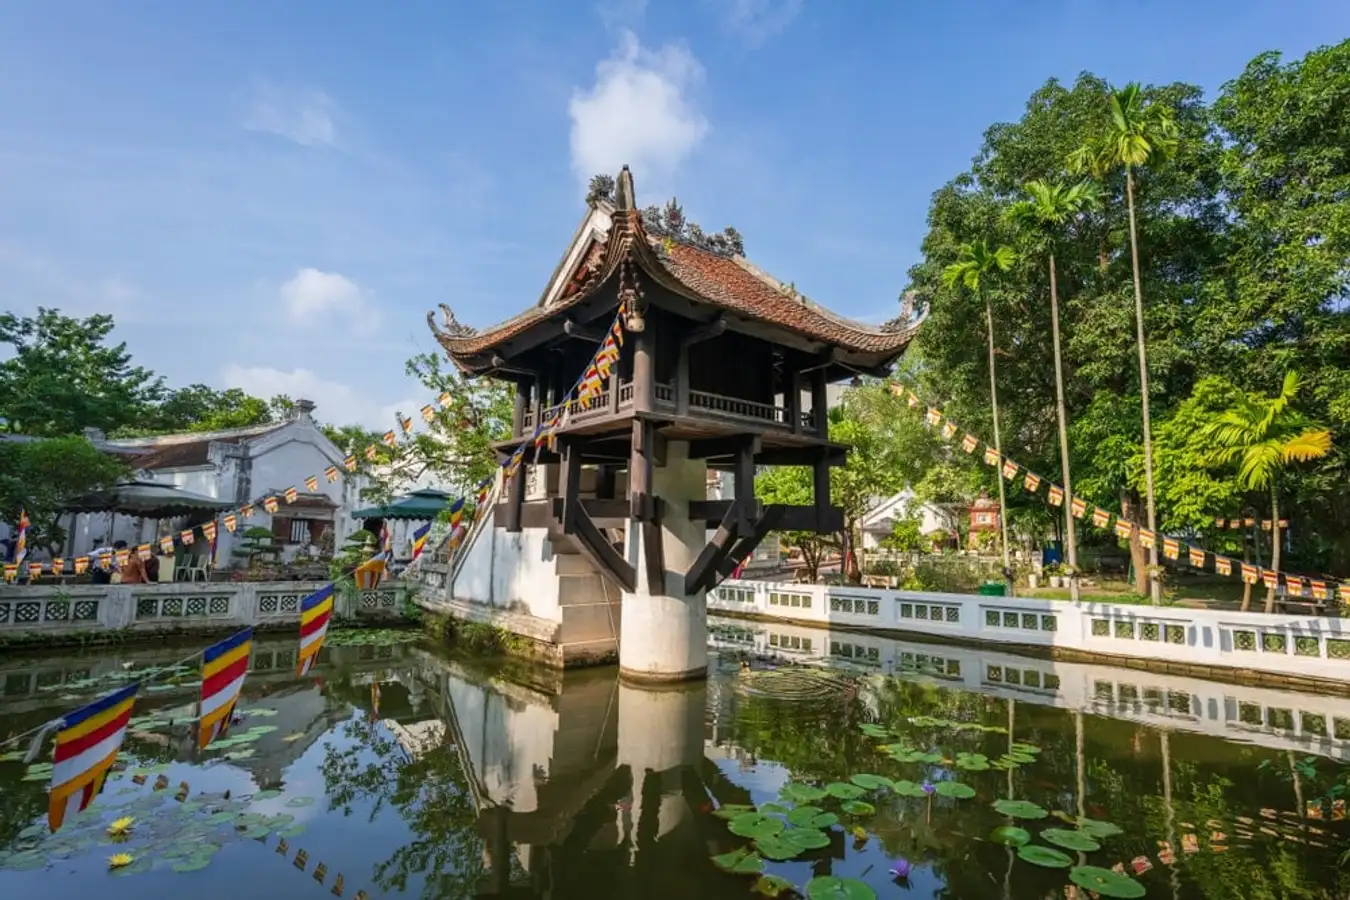 Gợi ý 5 địa điểm tham quan ở Hà Nội hấp dẫn không nên bỏ lỡ